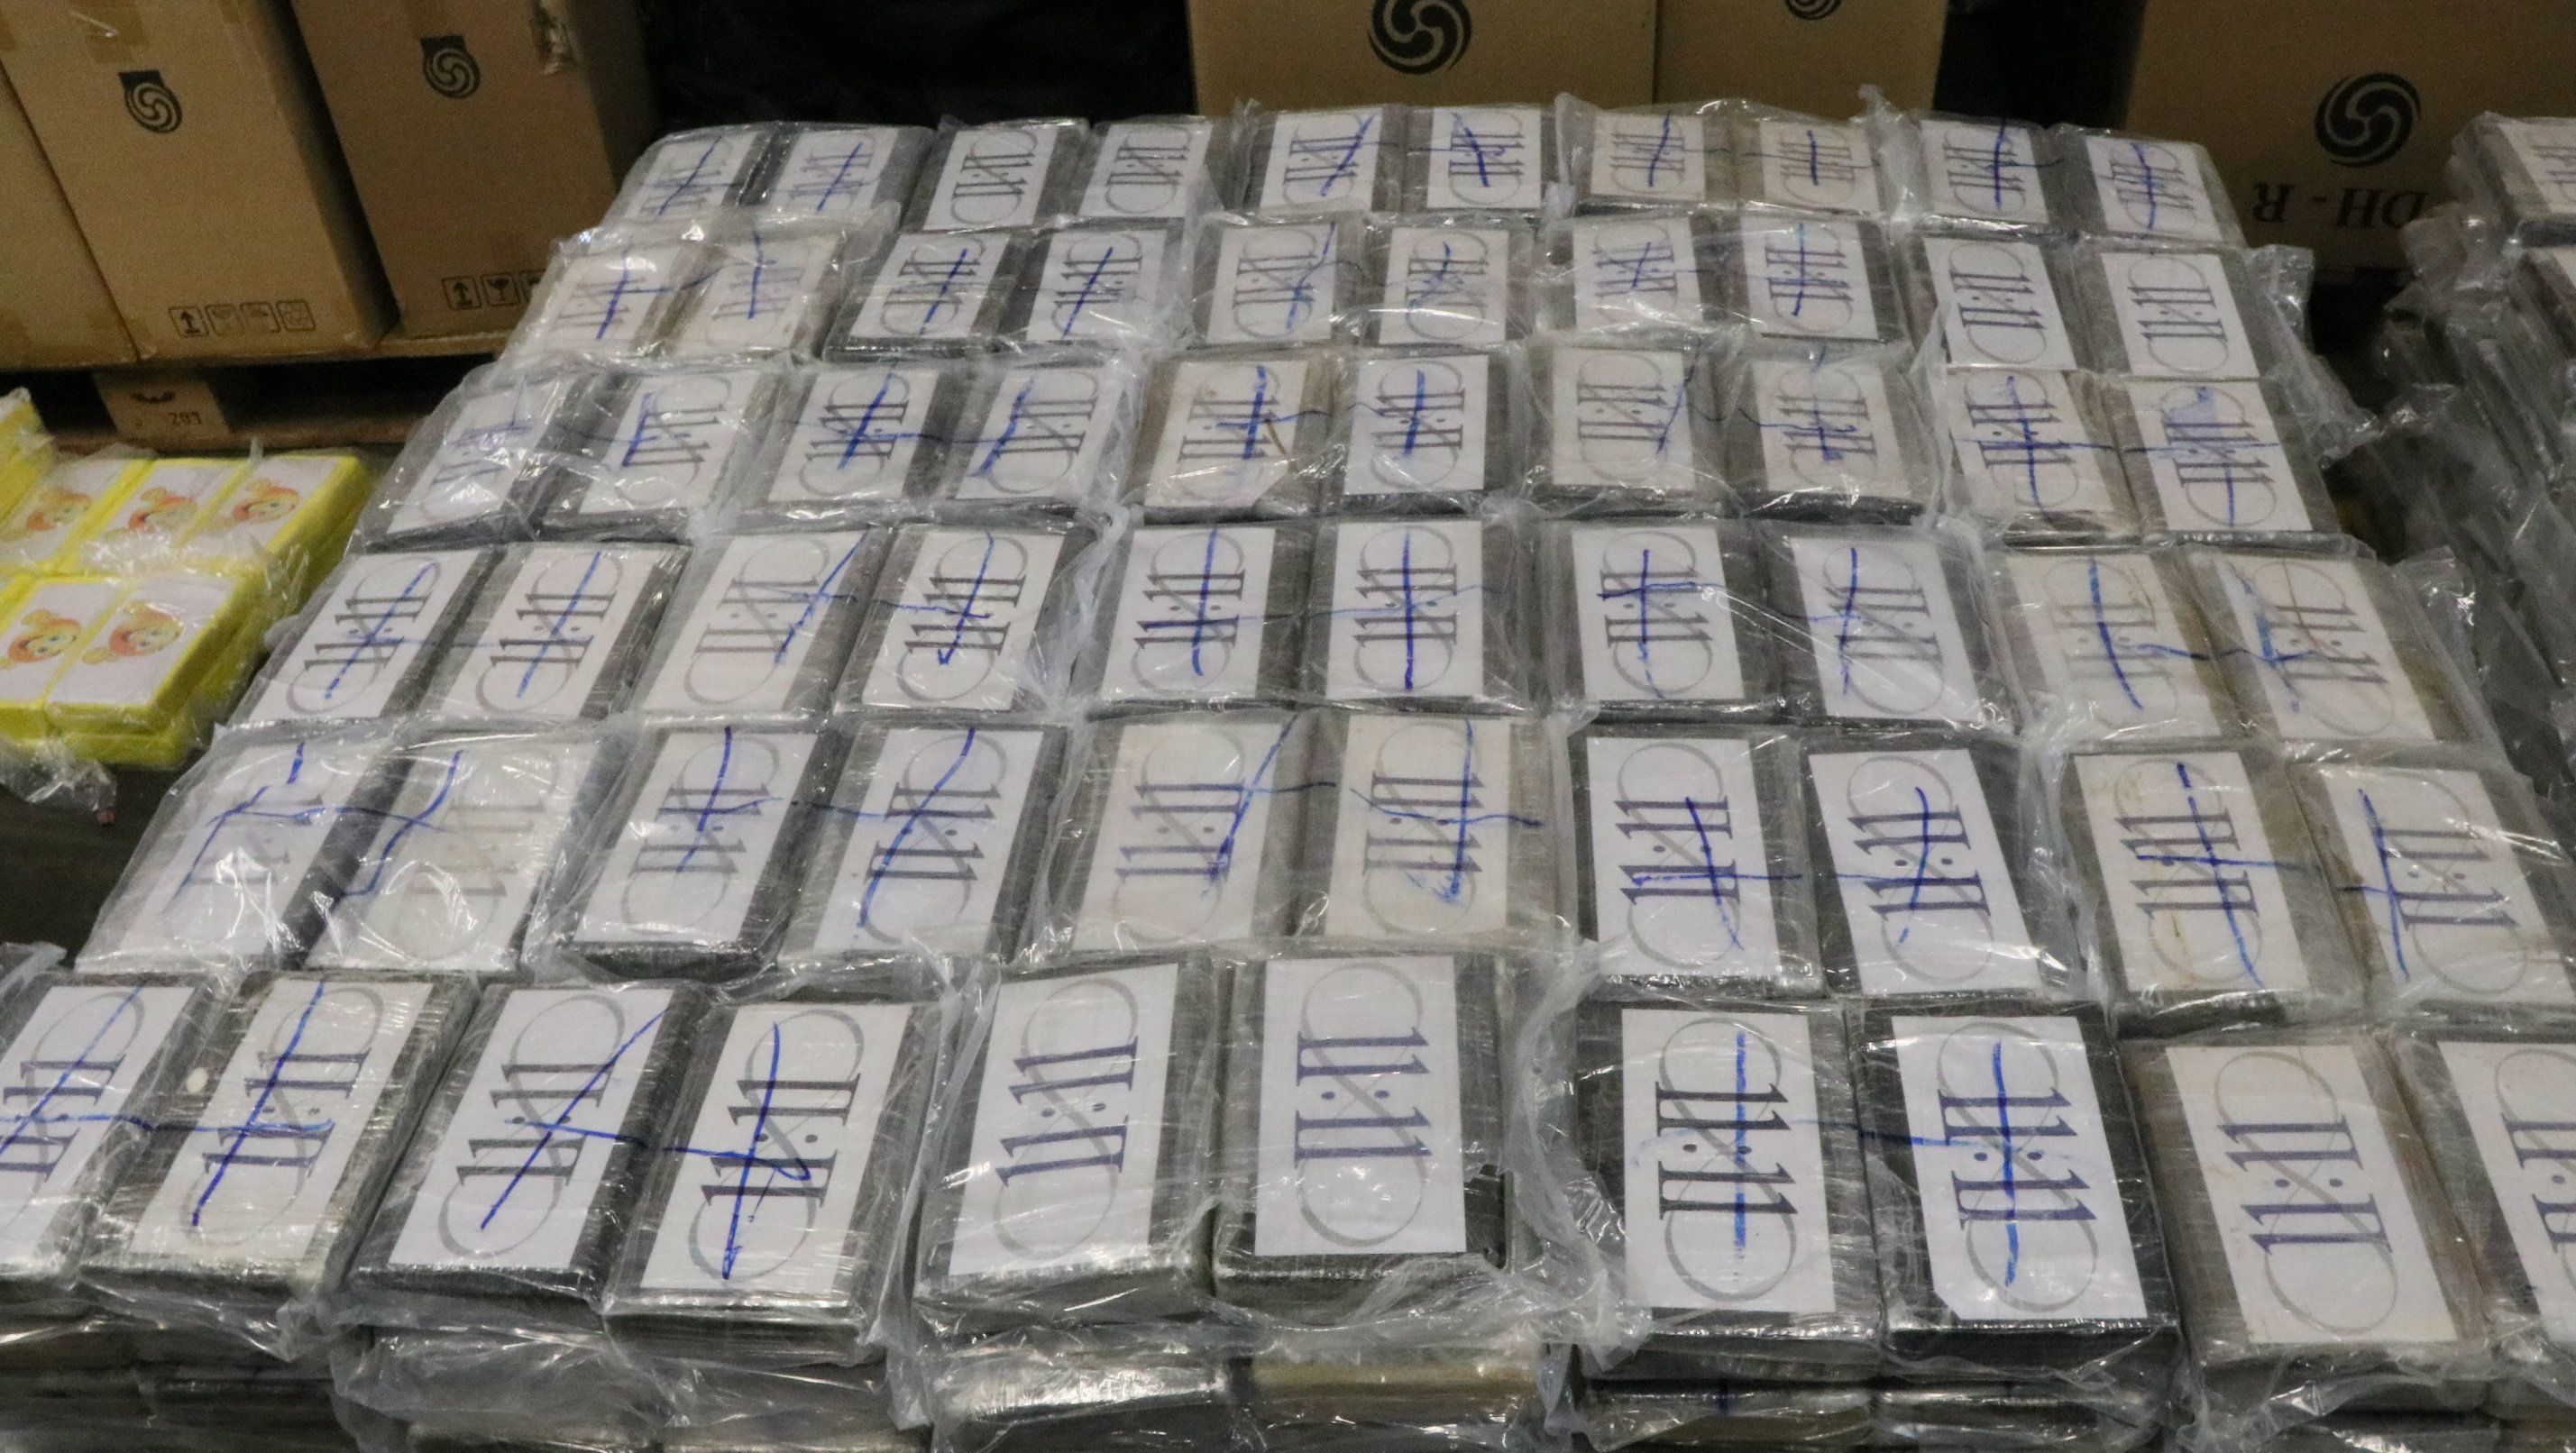 50 tonna kokaint foglaltak le egy nemzetközi akcióban